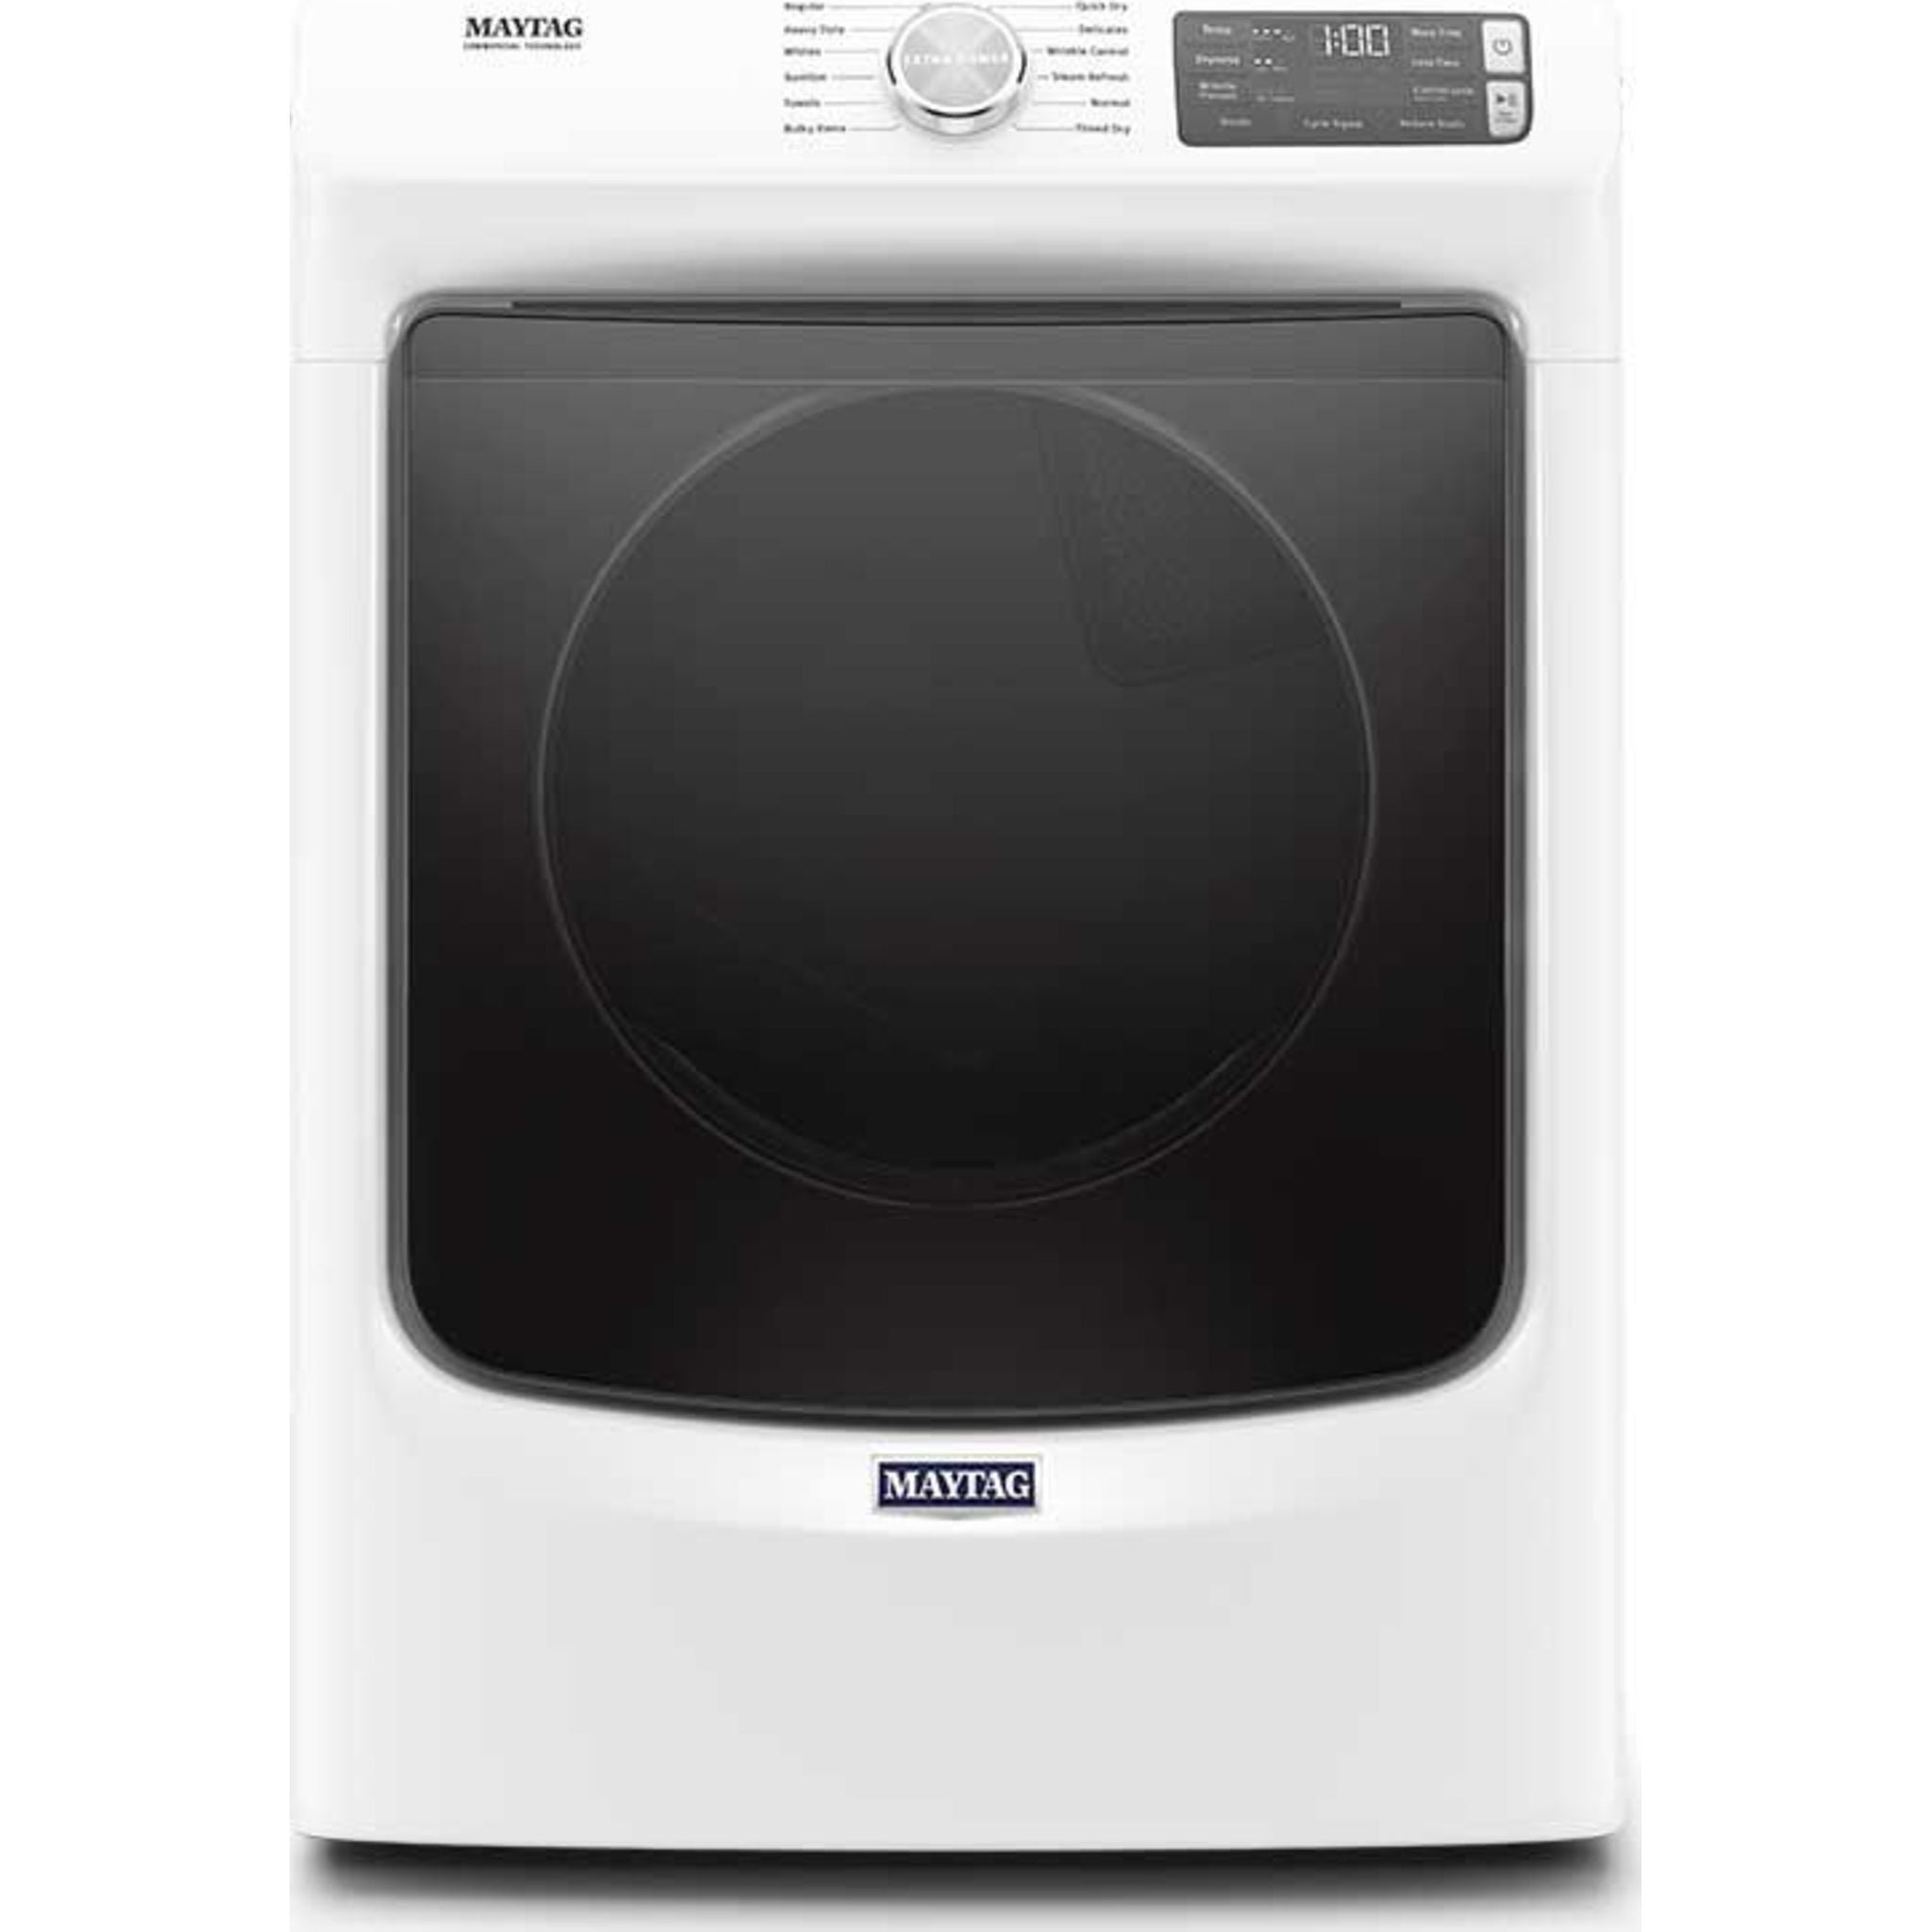 Maytag, Maytag Dryer (MGD6630HW) - White